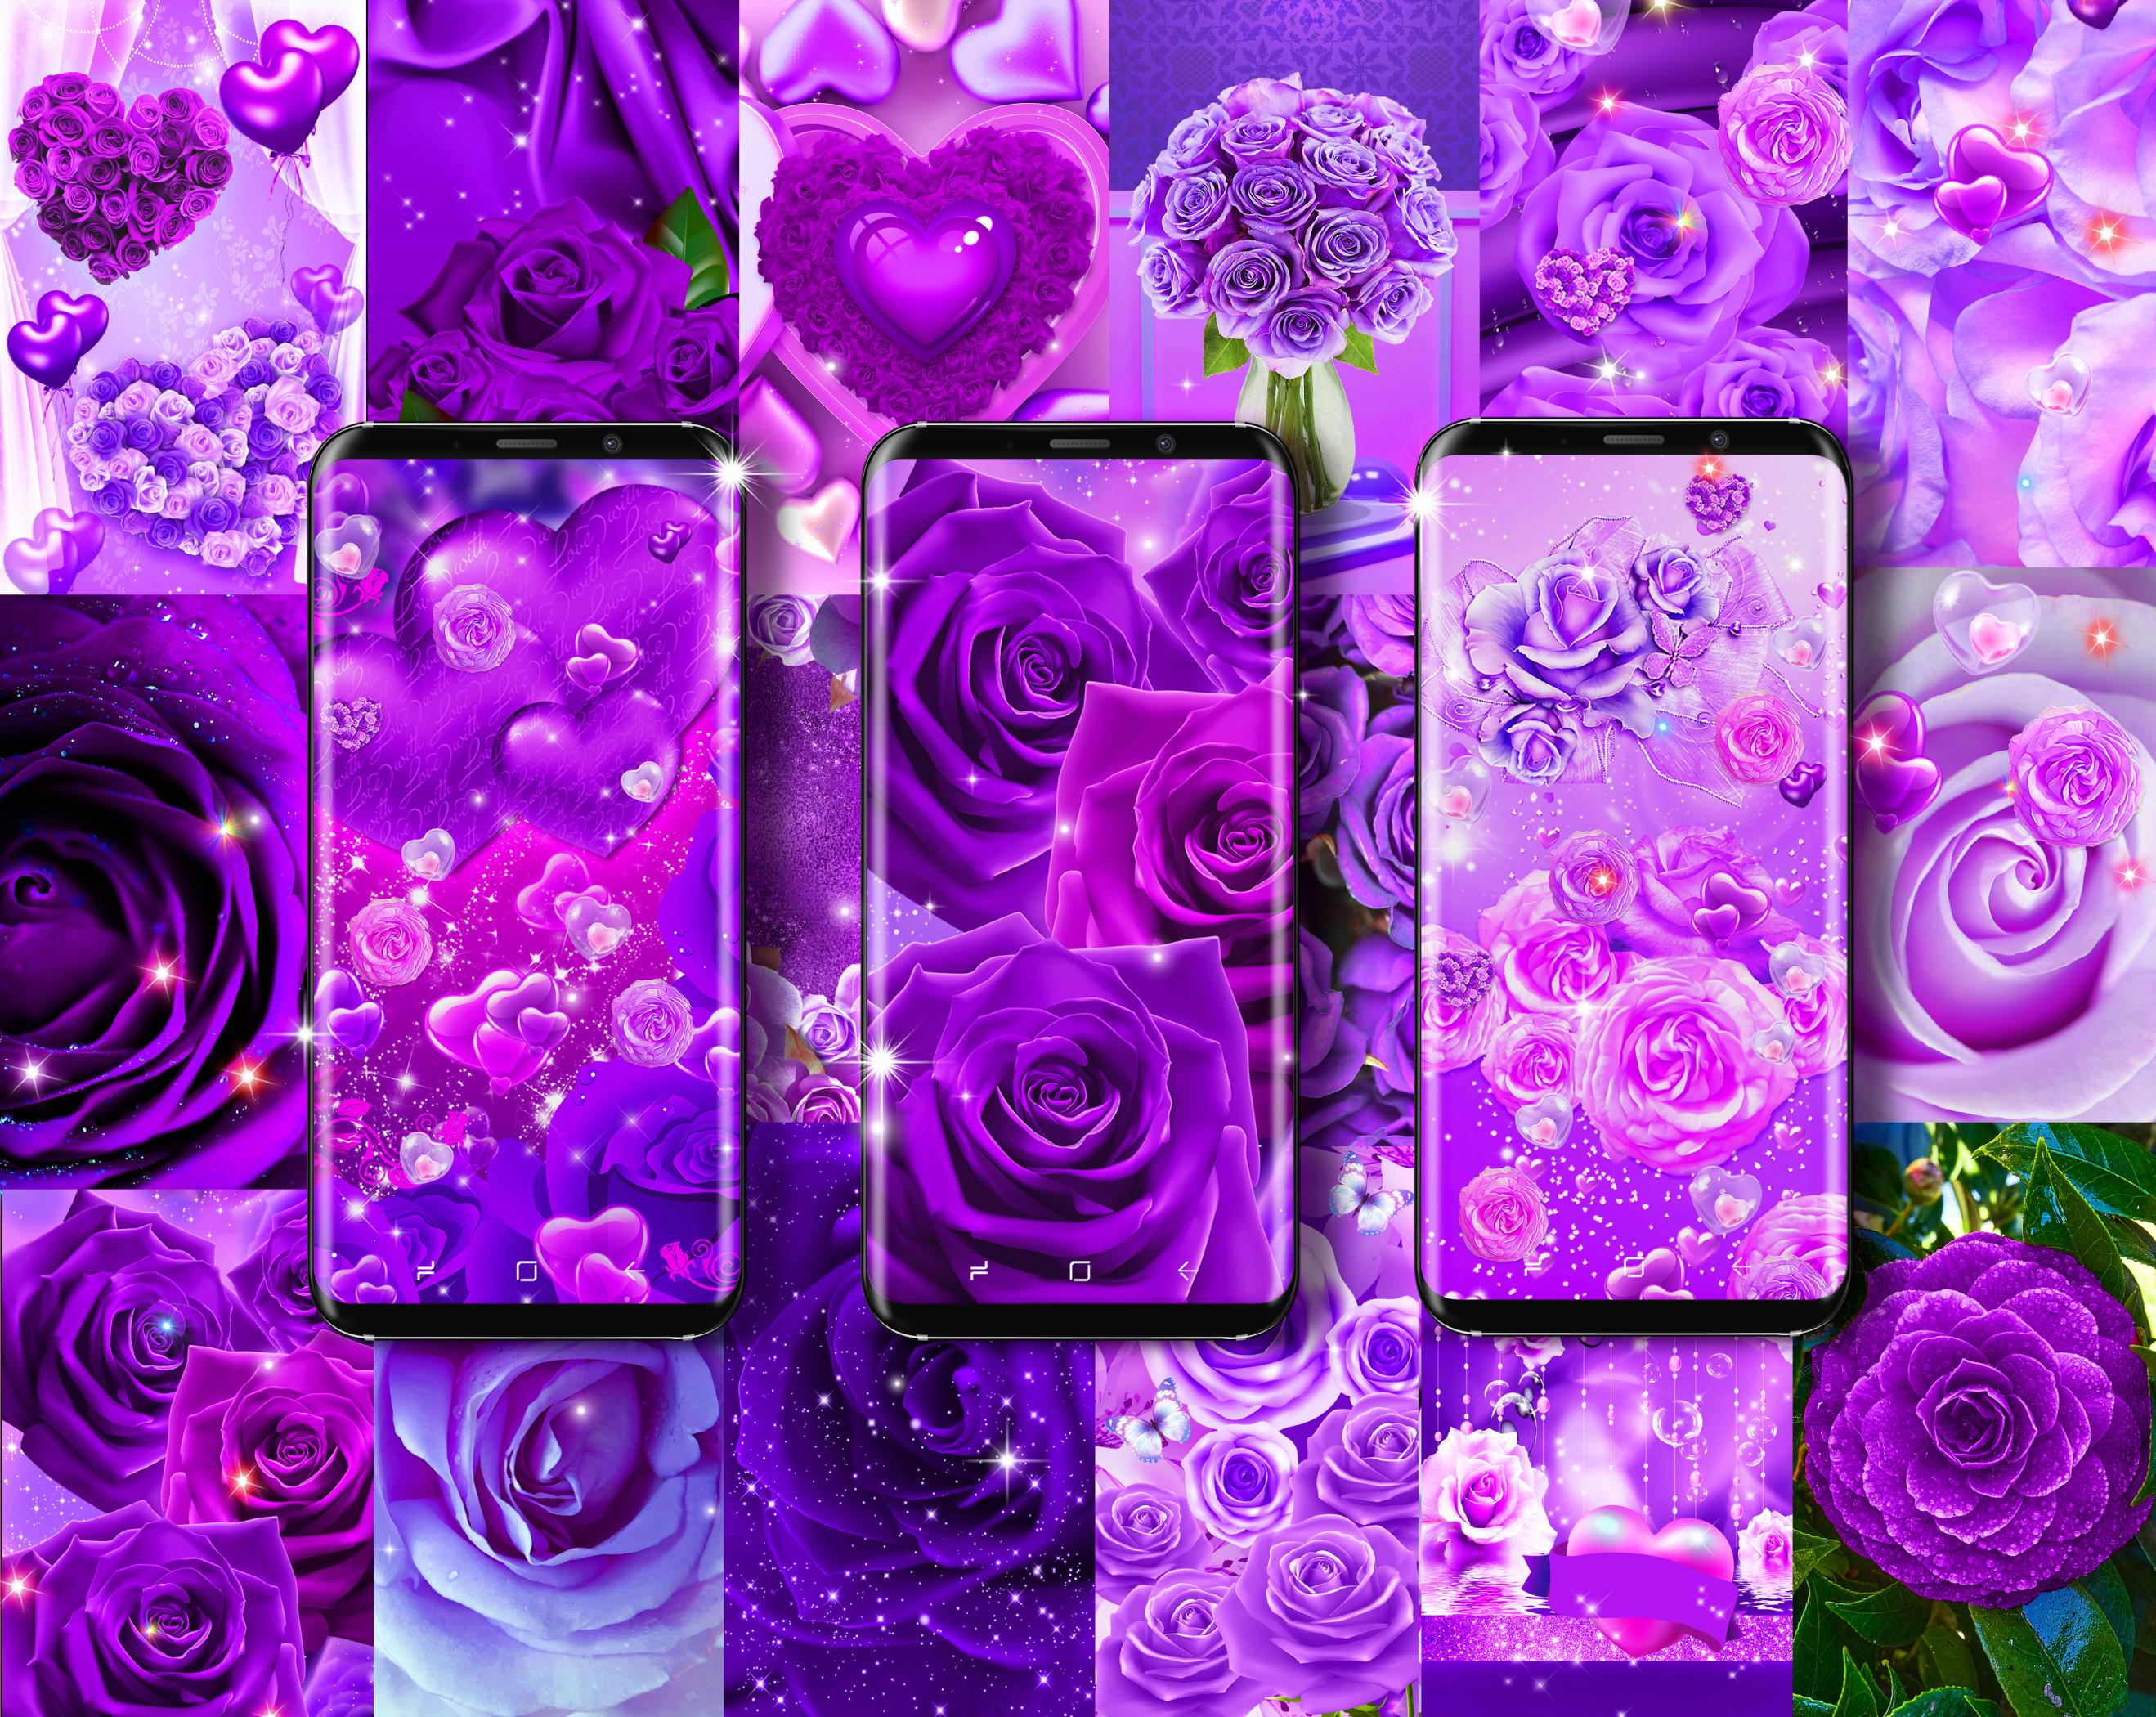 Bạn đang tìm kiếm một ứng dụng hình nền động tuyệt đẹp? Hãy tải ứng dụng hình nền hoa hồng tím động cho Android ngay để thưởng thức những bông hoa tím thần tiên.